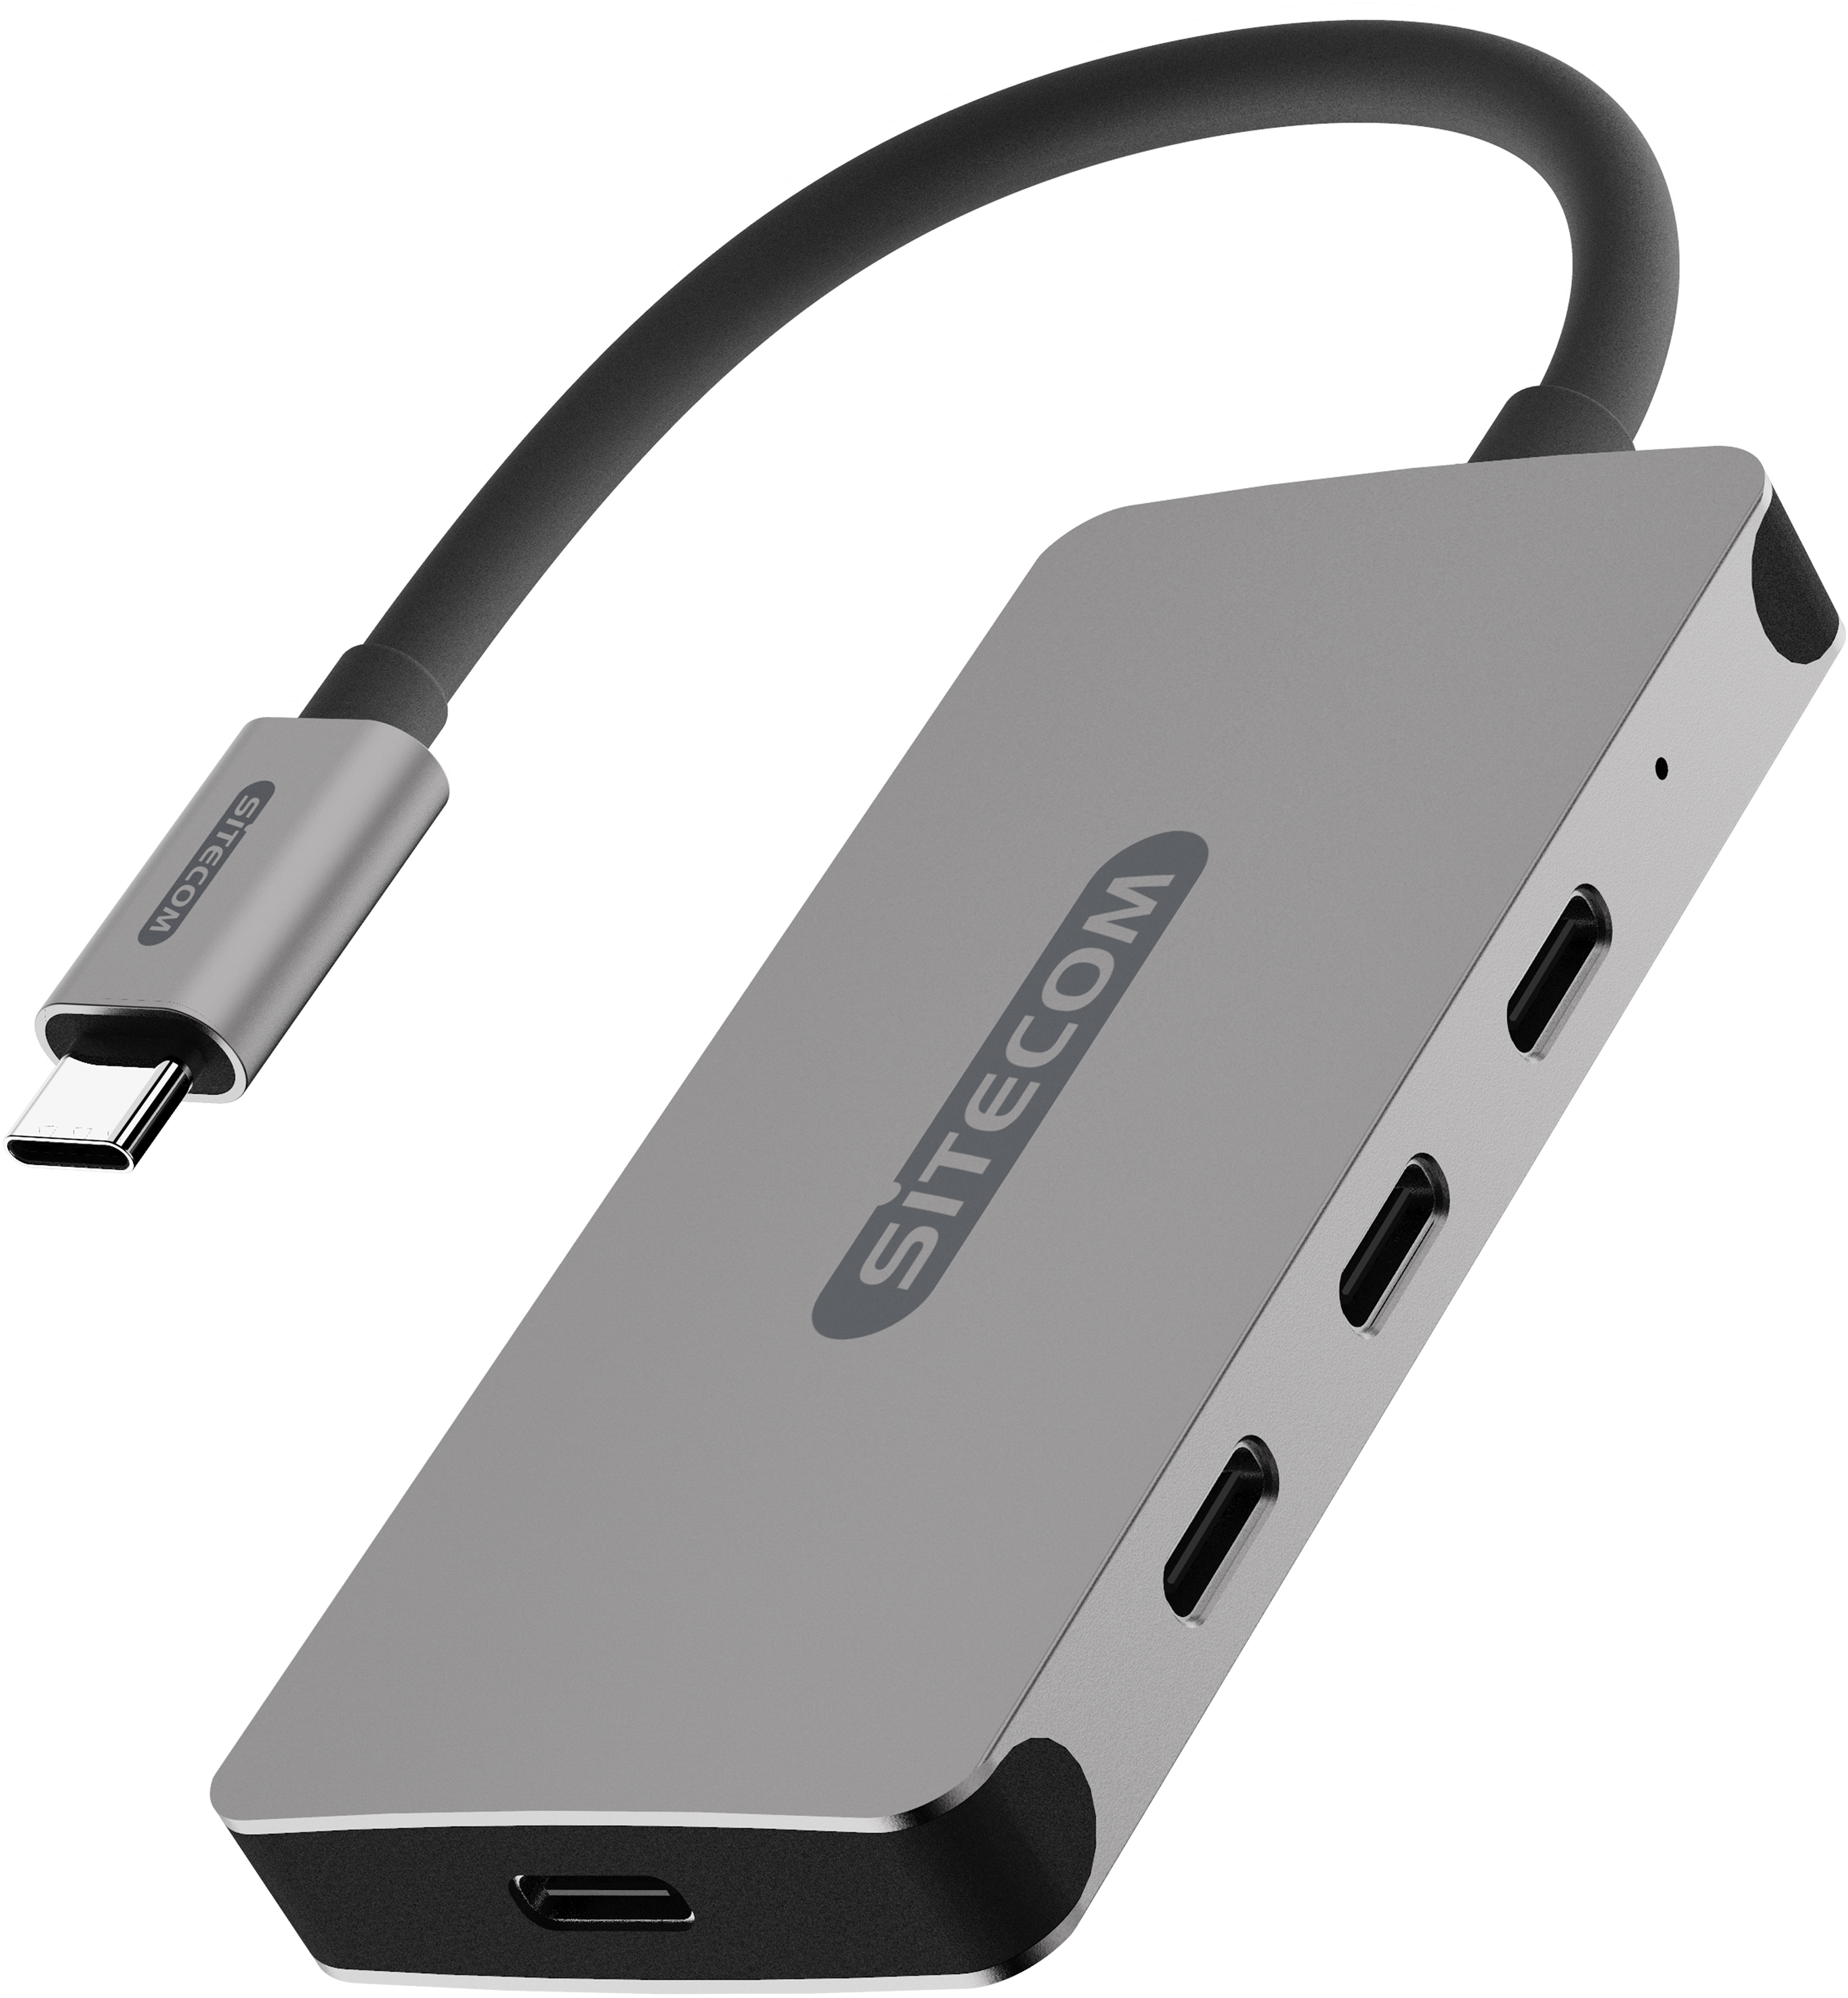 SITECOM USB-C Hub 4 Port CN-386 USB-C with PD 10Gbps, 100W PD